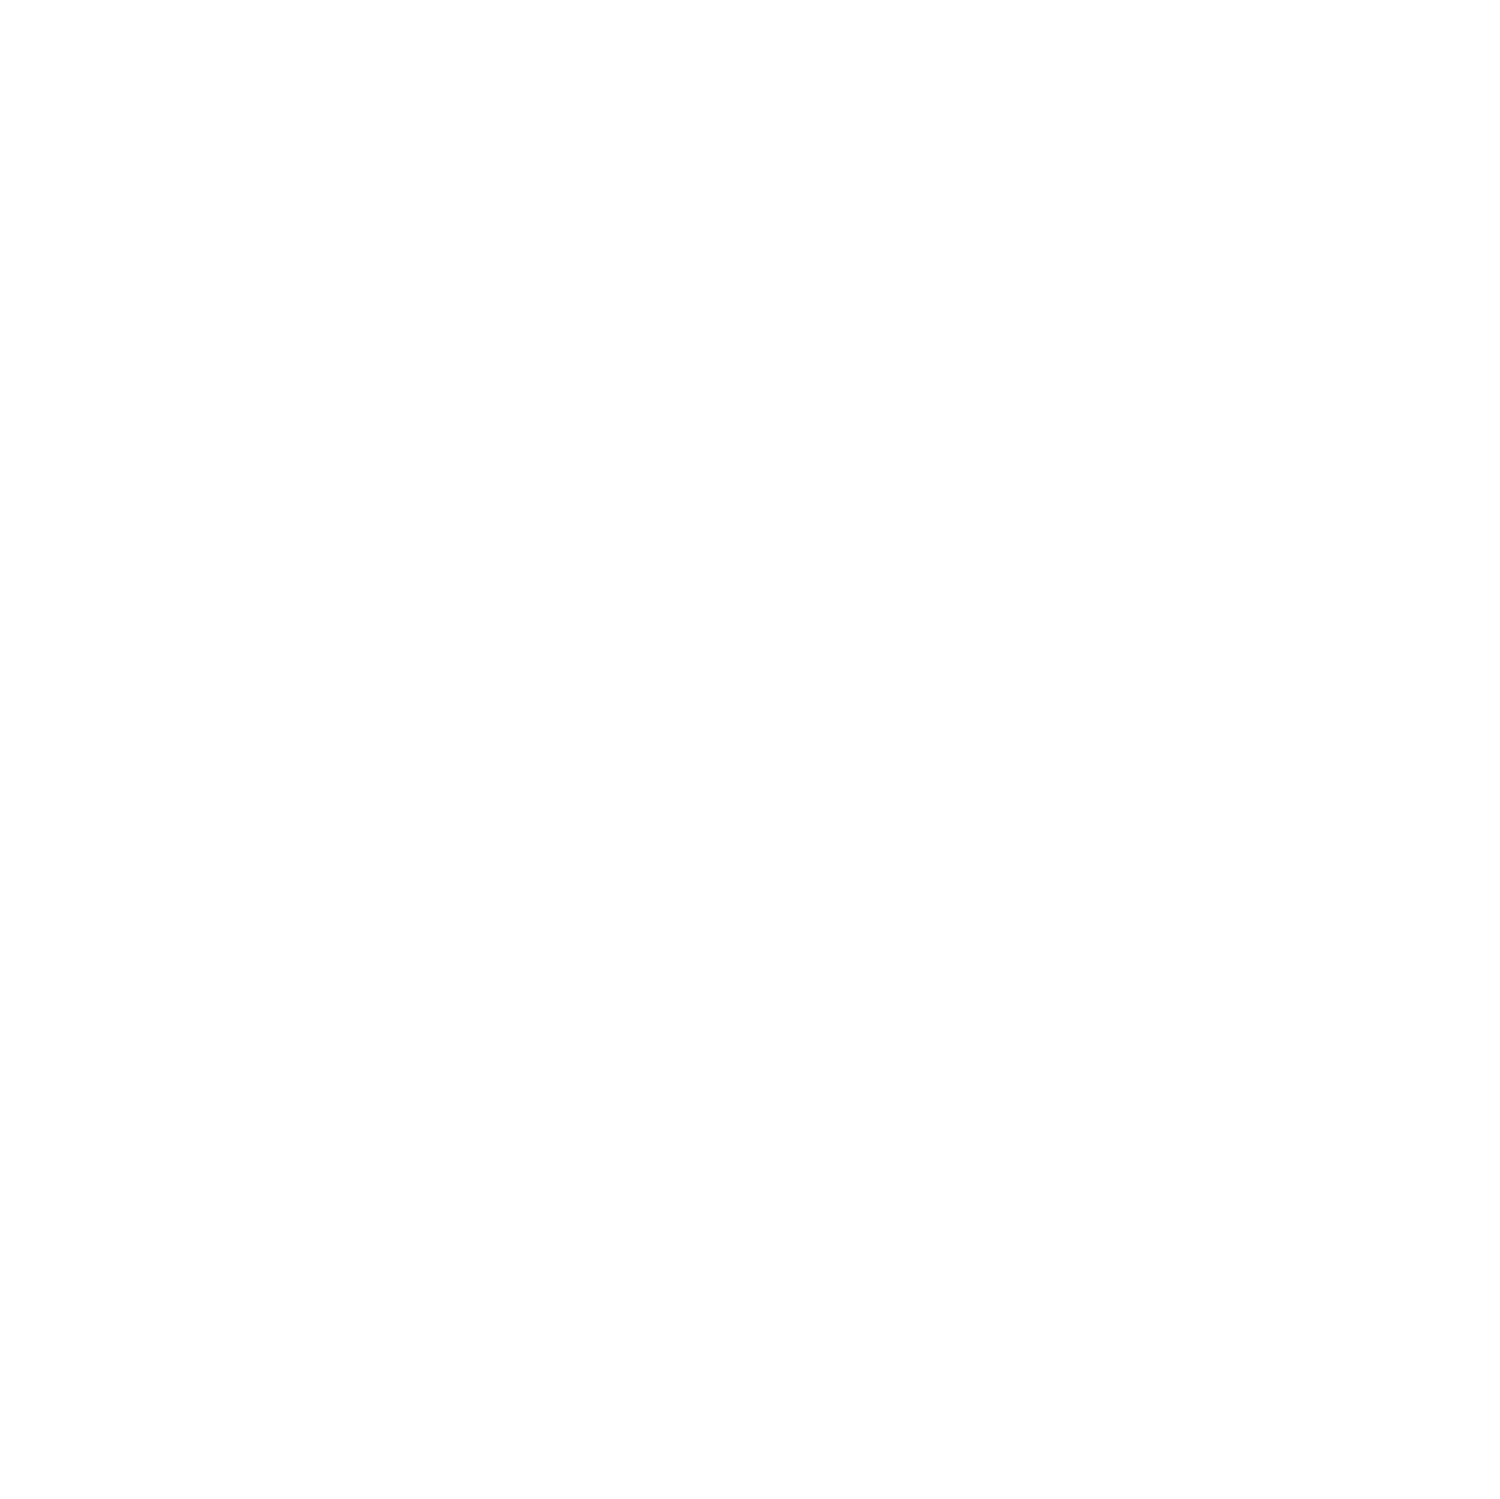 Prism Aerial Arts